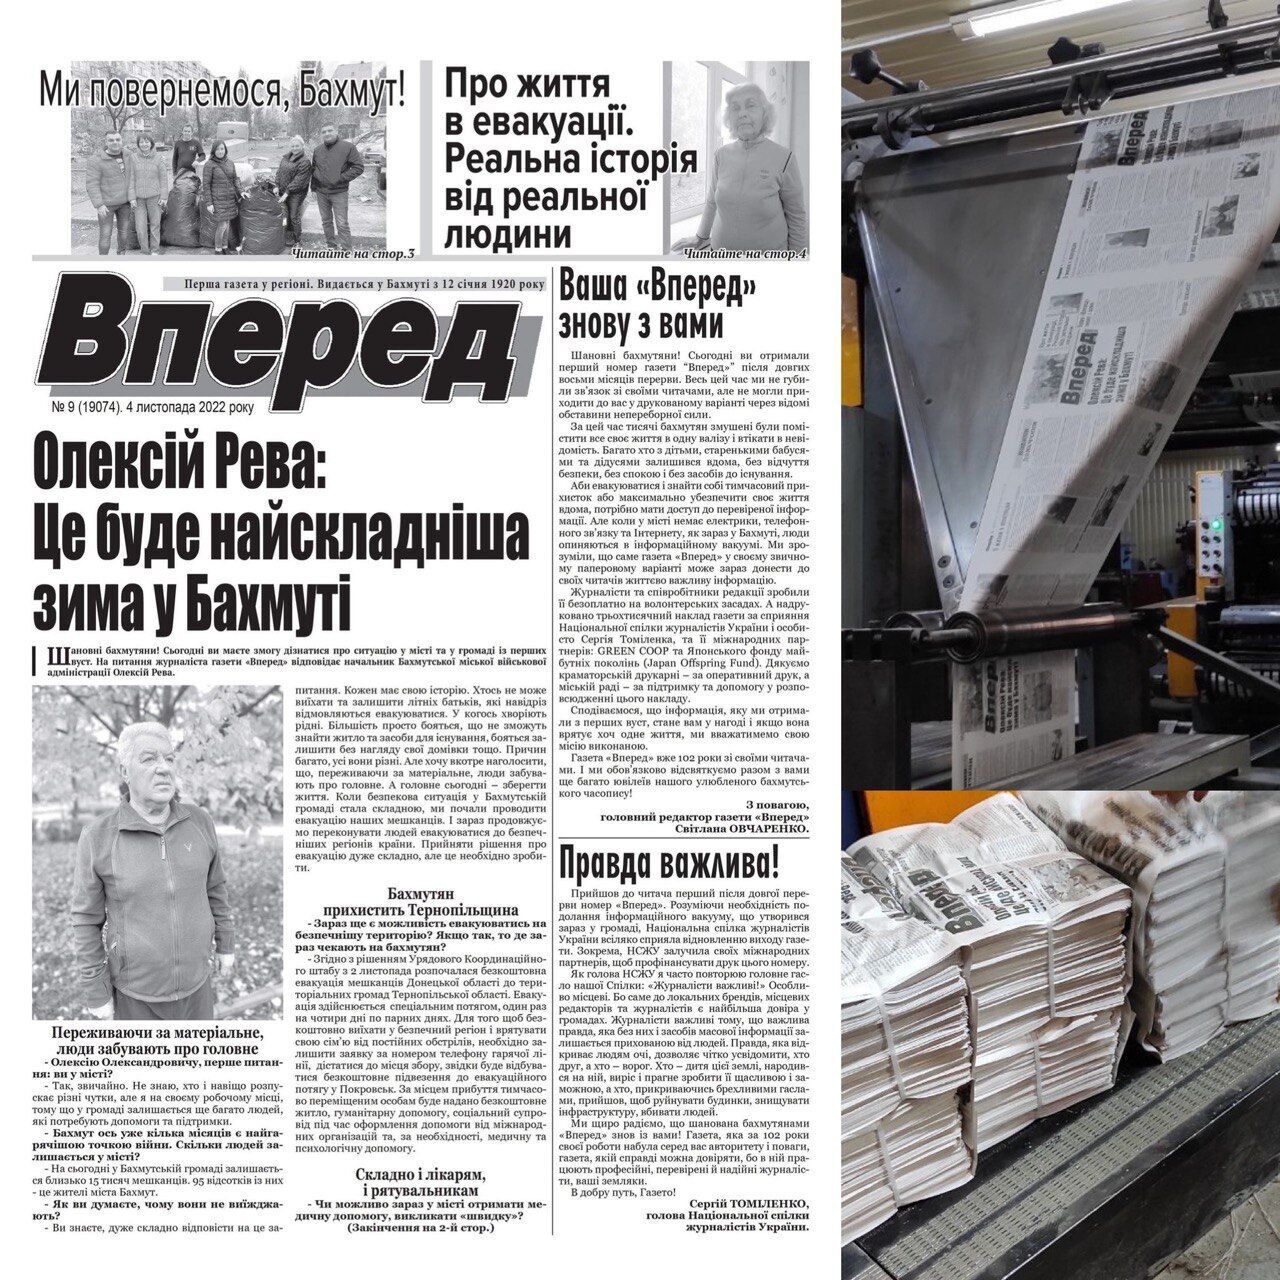 Жителям Бахмута раздадут первый после 24 февраля выпуск украинской газеты "Вперед"